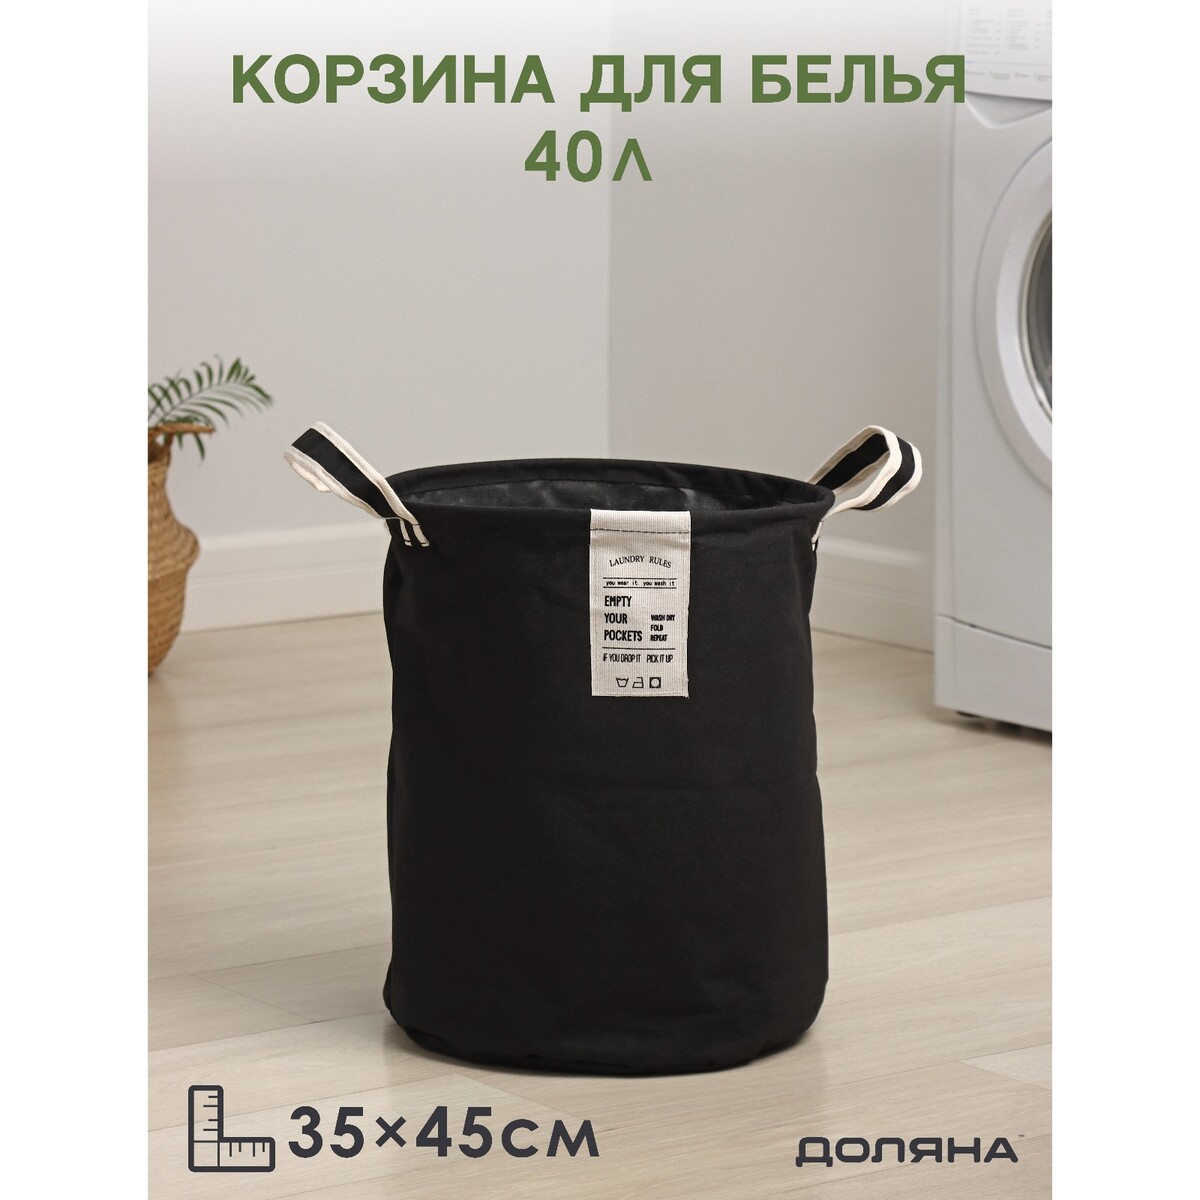 Корзина для белья круглая доляна laundry, 35×45 см, цвет черный корзина для хлеба круглая высокая 28 см kesper